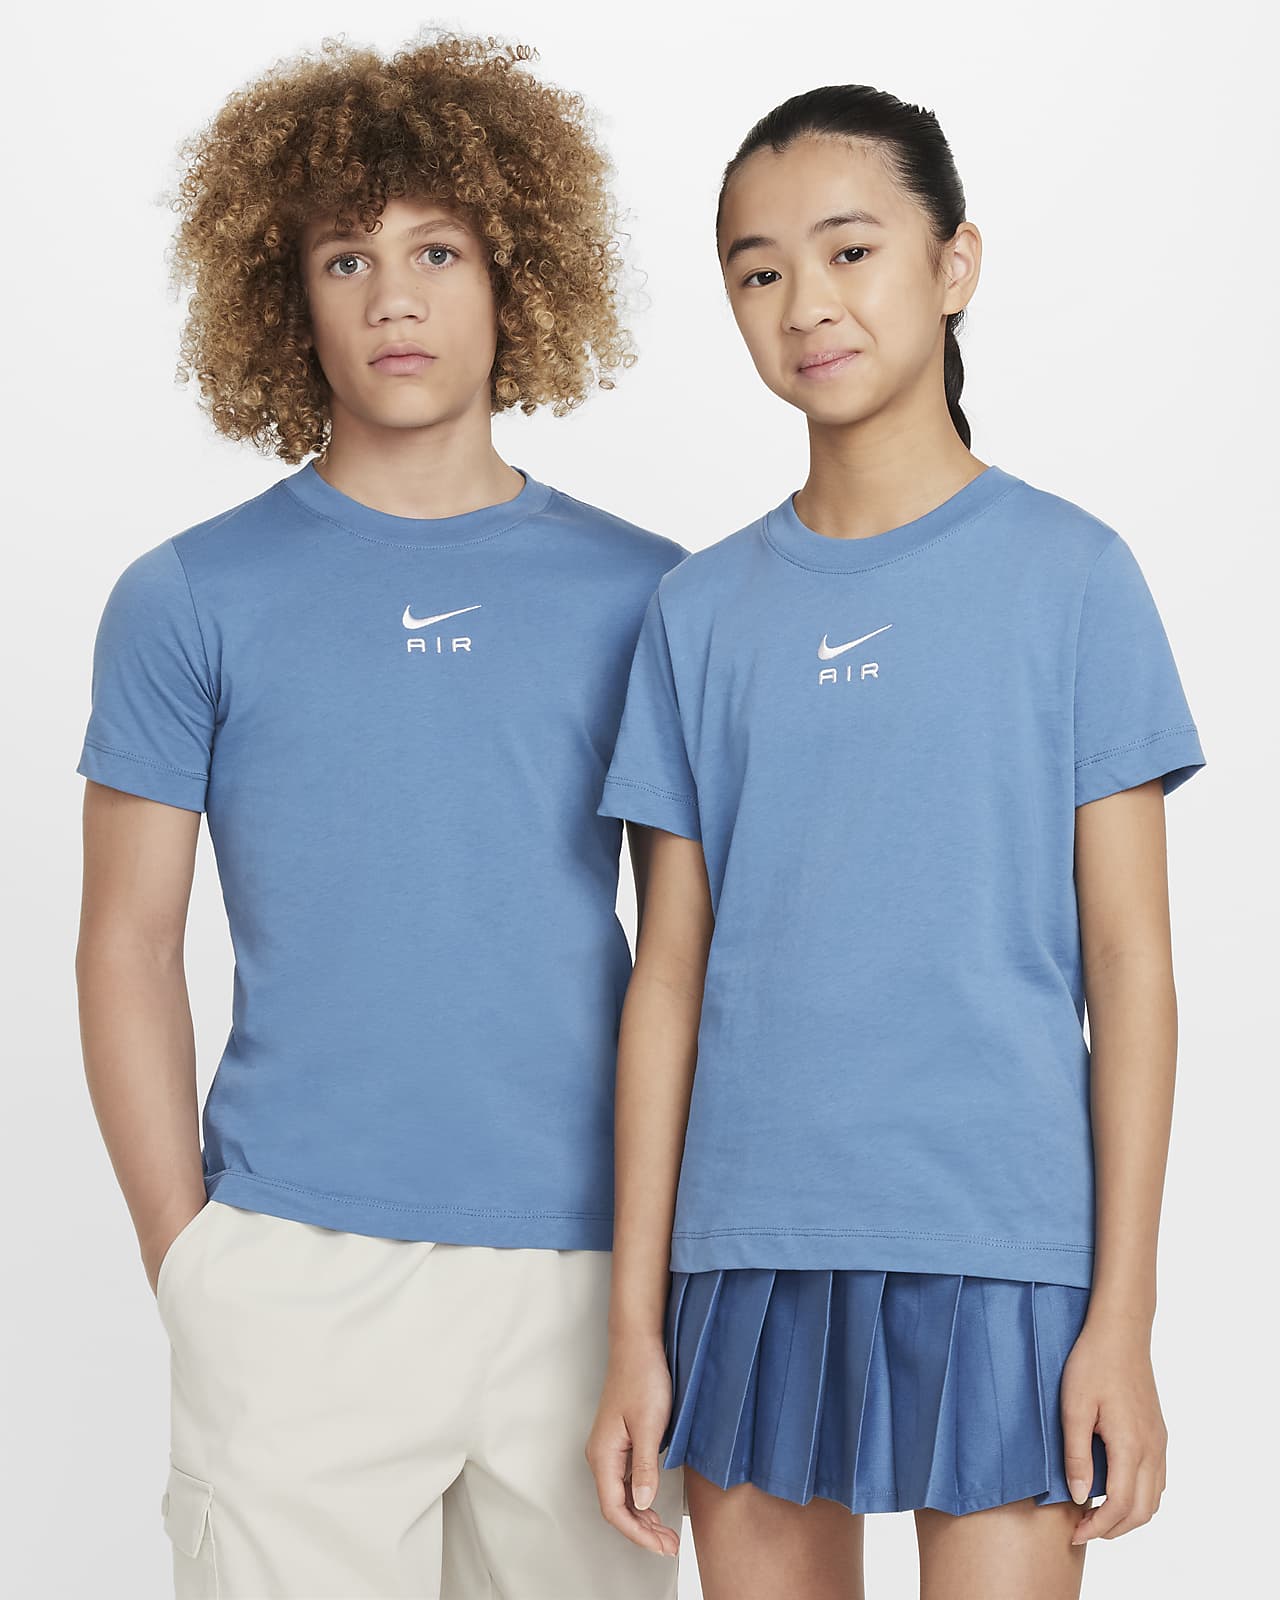 Nike Air T-Shirt für ältere Kinder